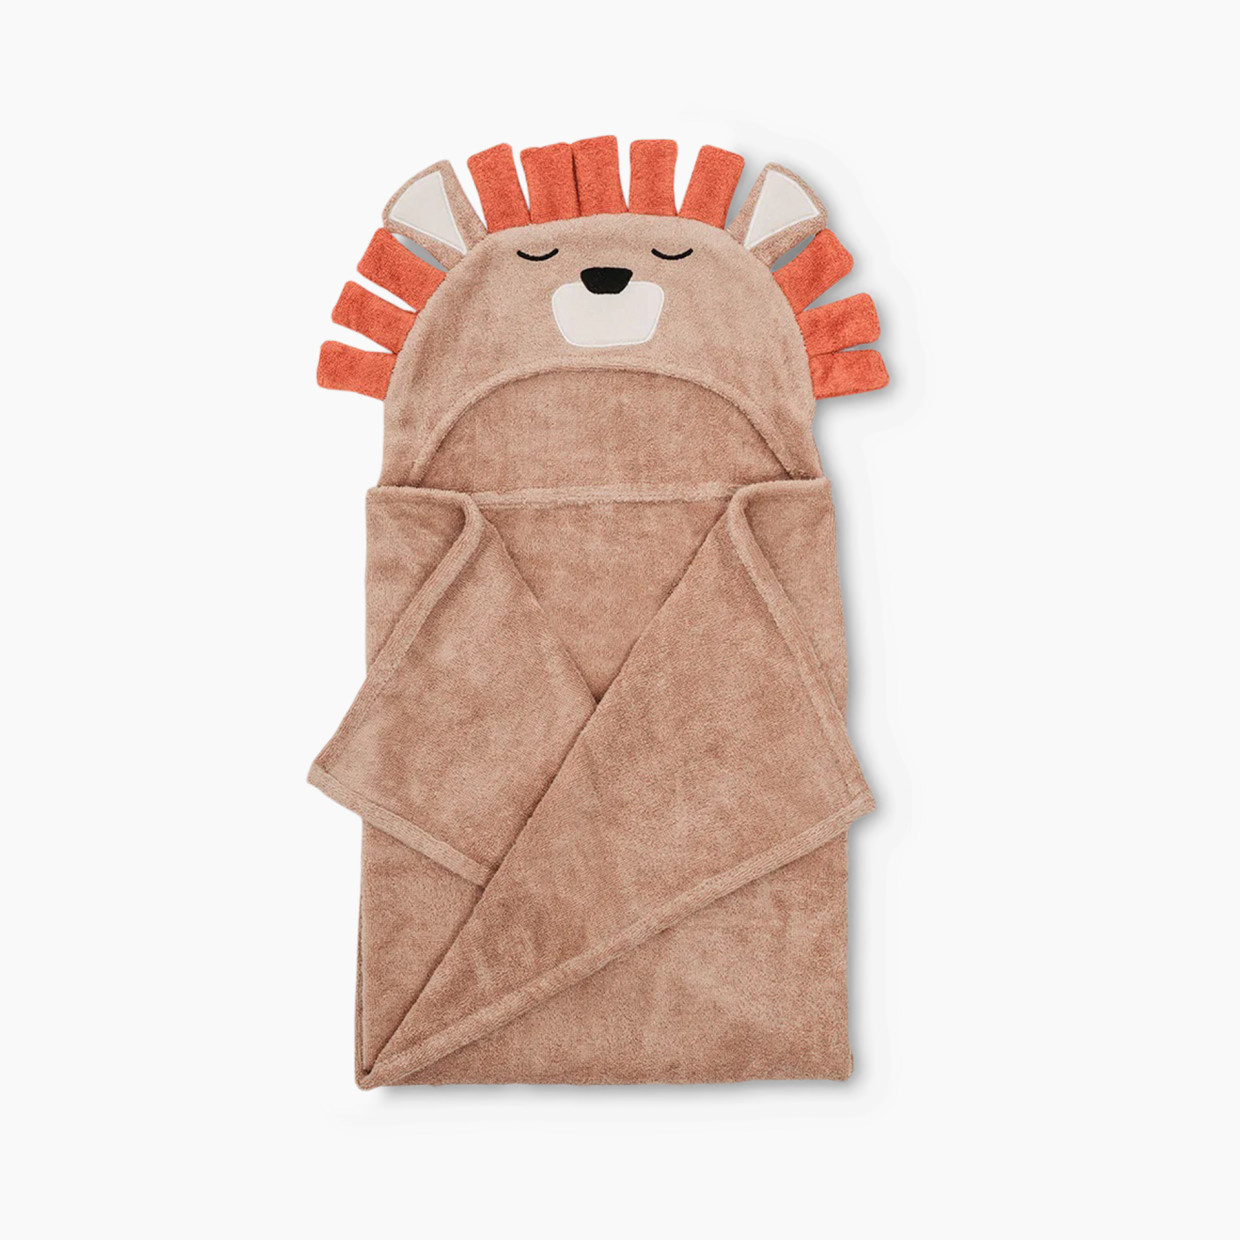 Natemia Animal Hooded Towel - Lion.